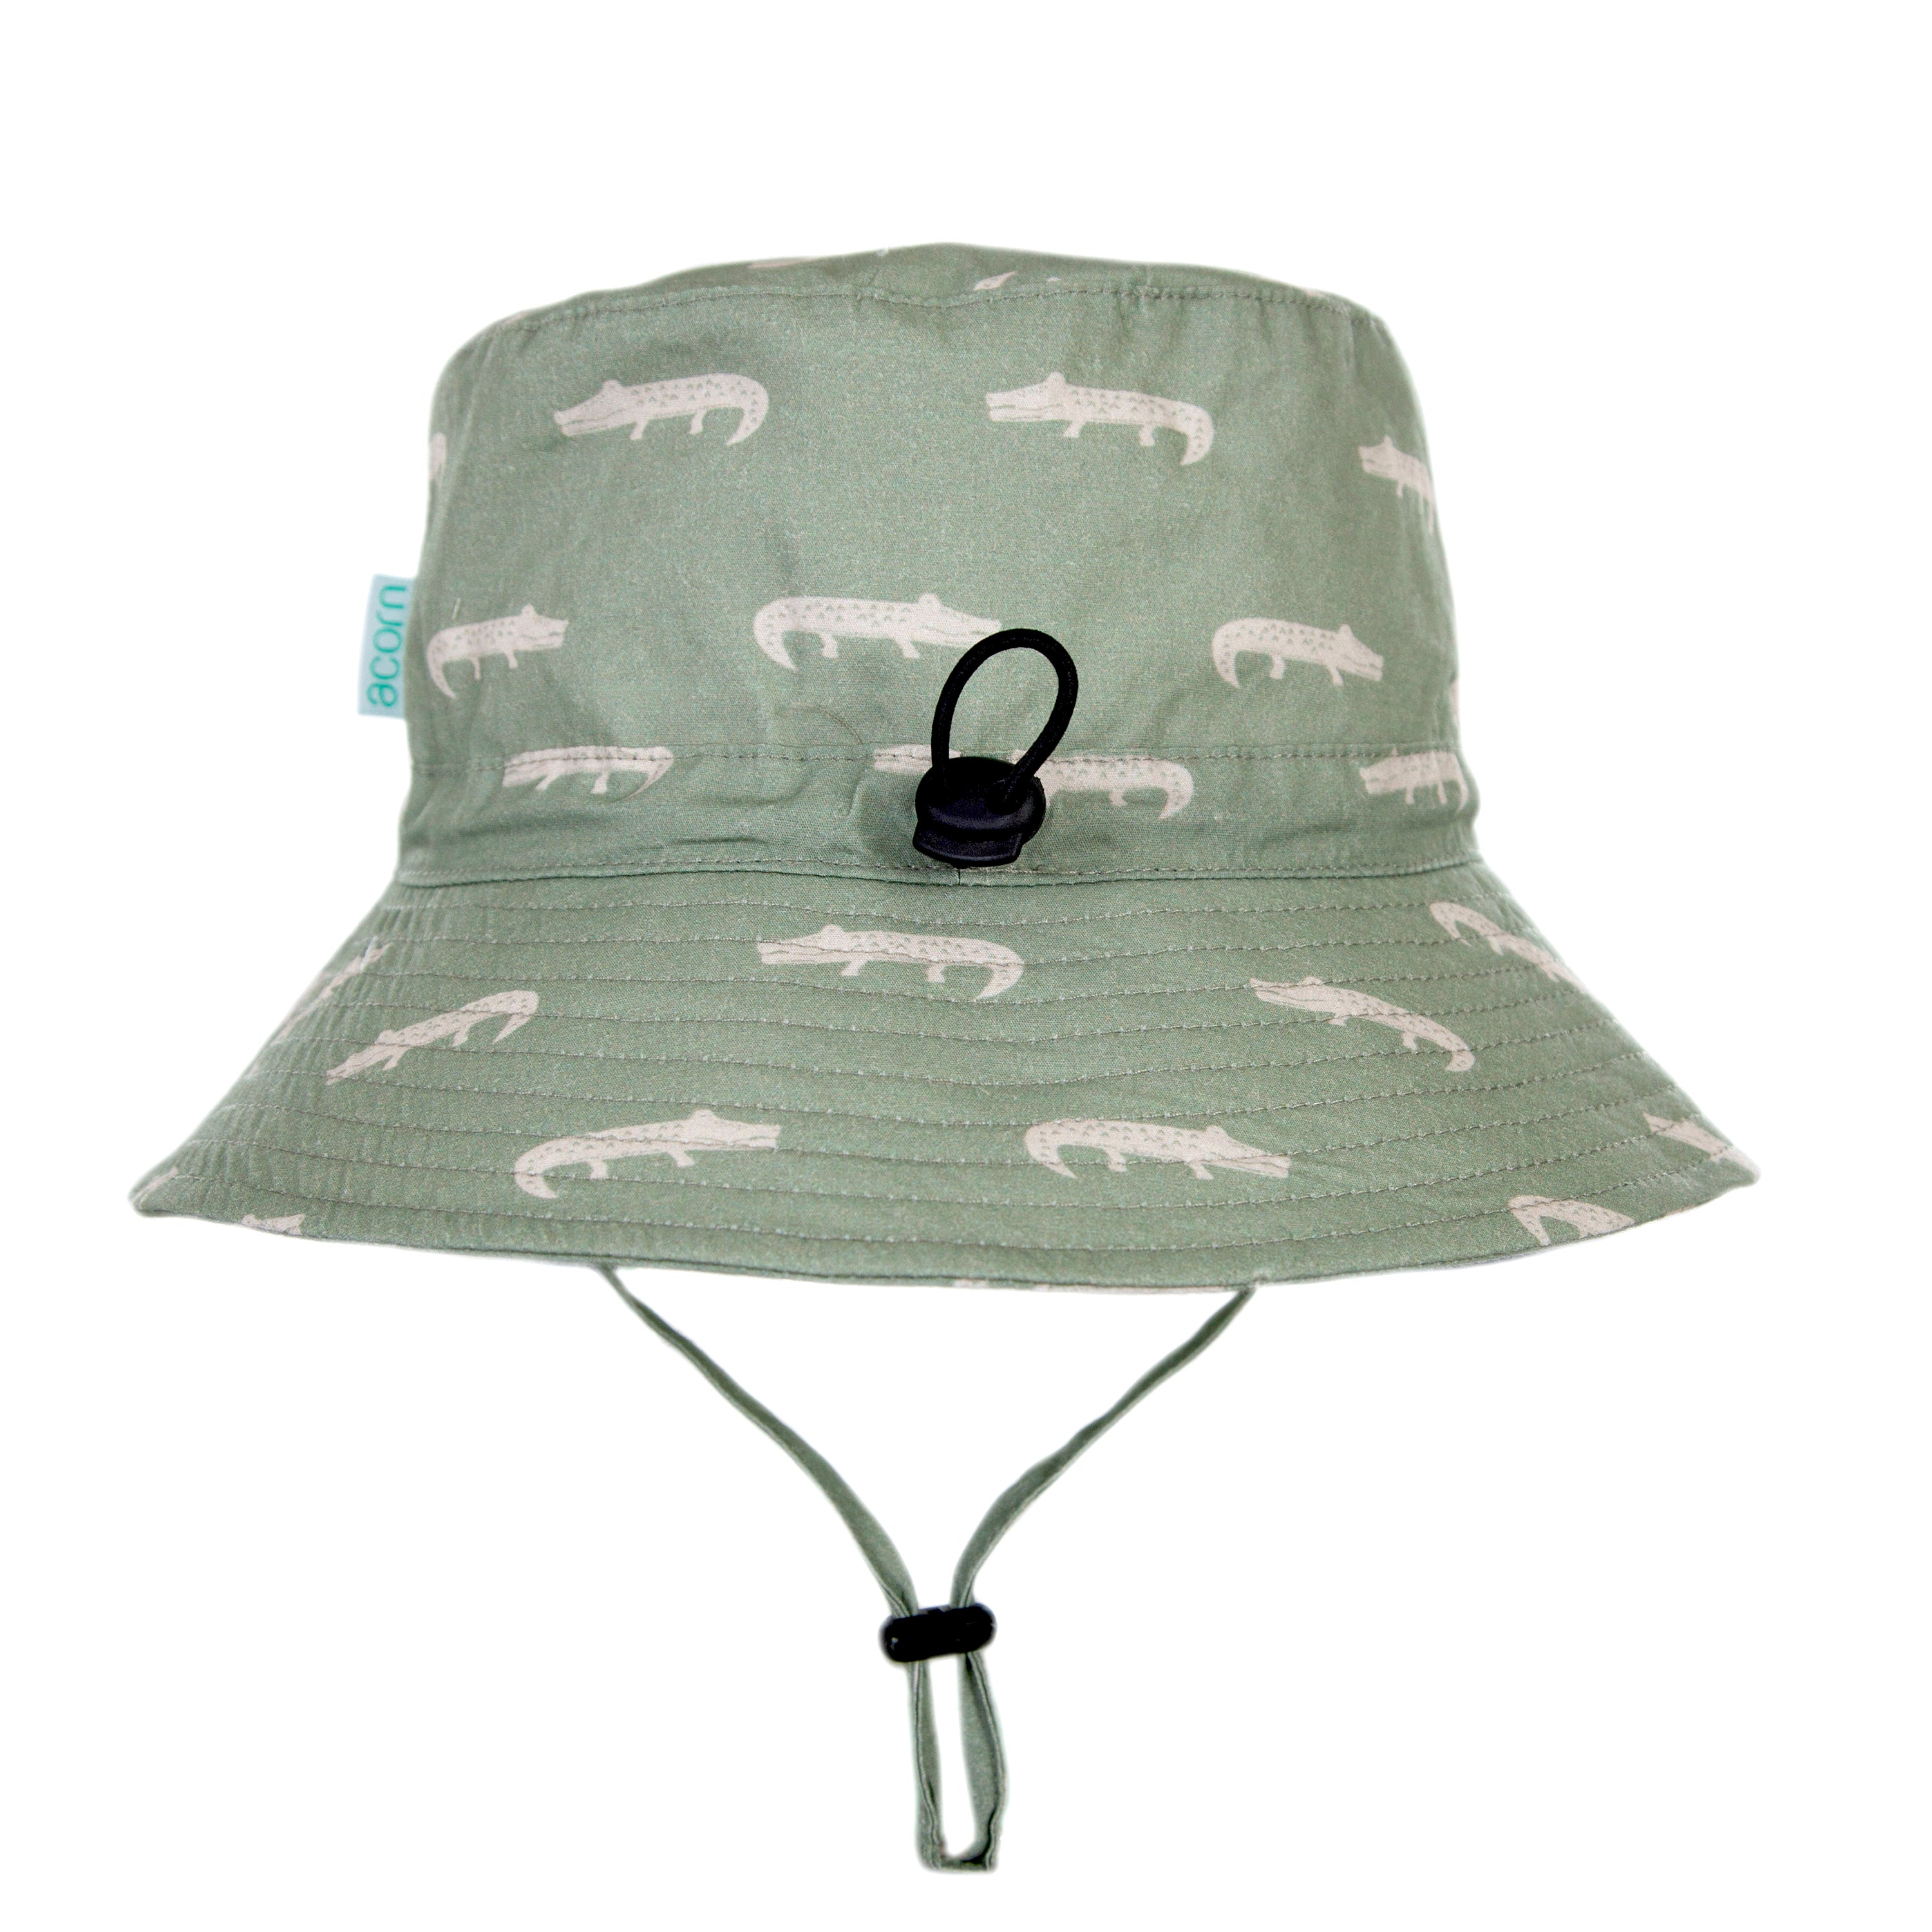 Acorn - Smiley Crocodile Bucket Hat